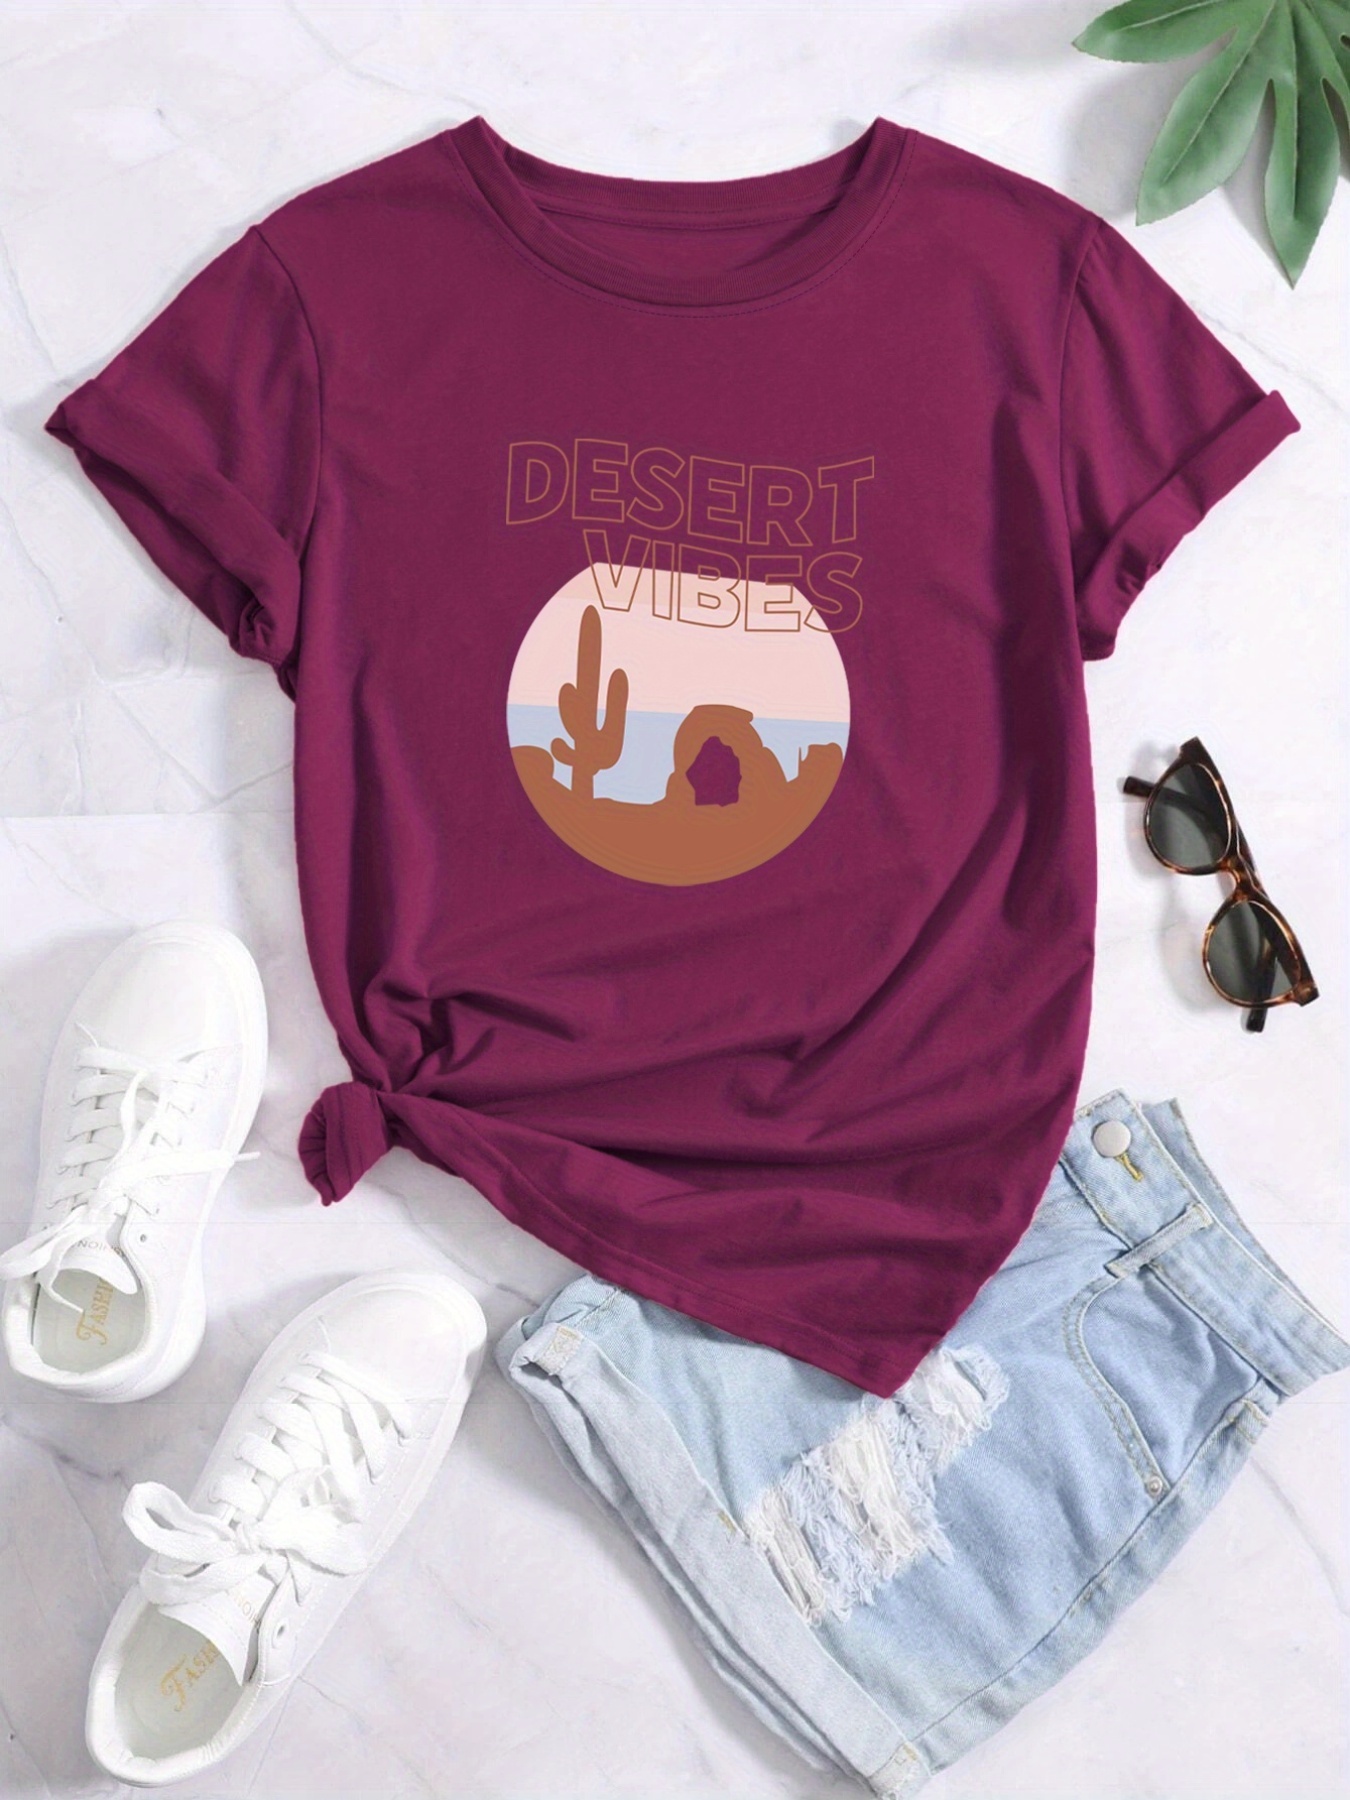 Camiseta manga corta mujer Desert rosa